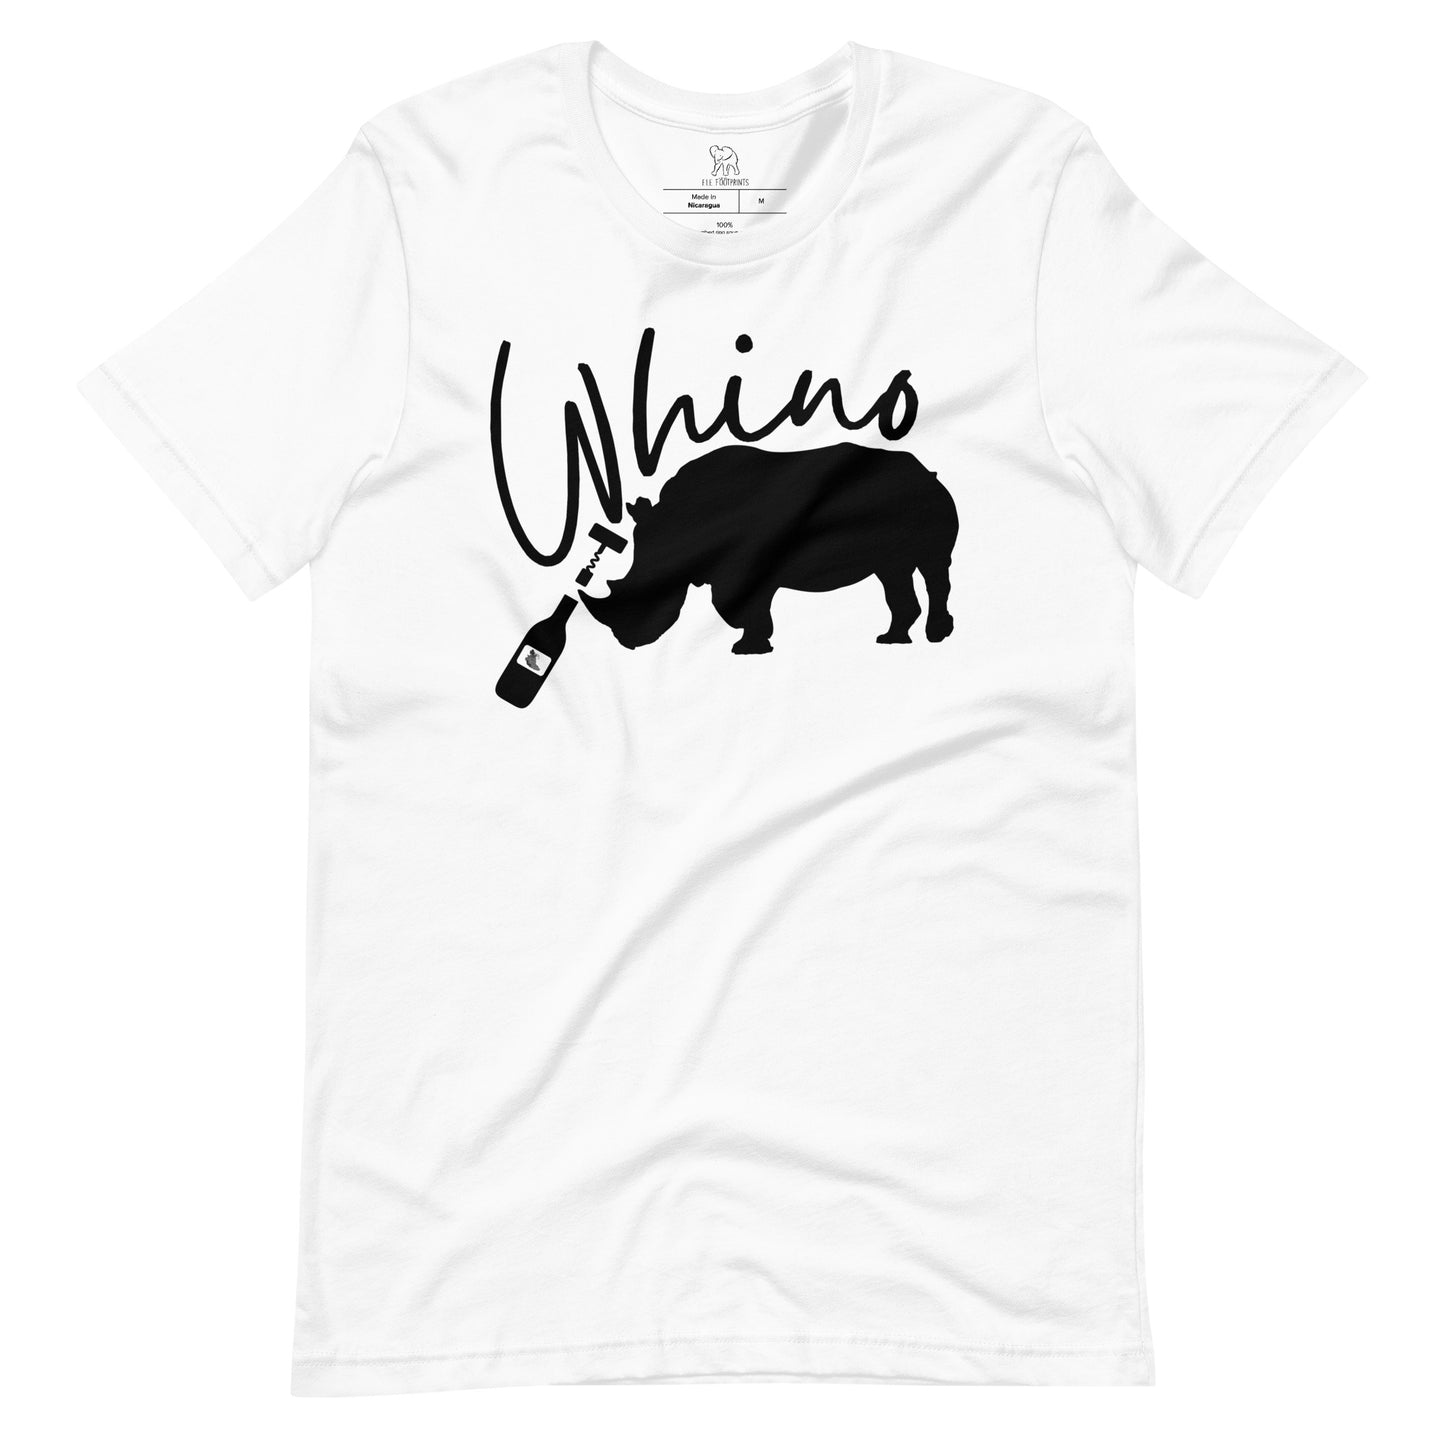 Whino Women's T-shirt | Rhino Opening a Bottle of Wine Shirt | Shirt with Rhino | Wine Shirt | Whino Men's T-shirt